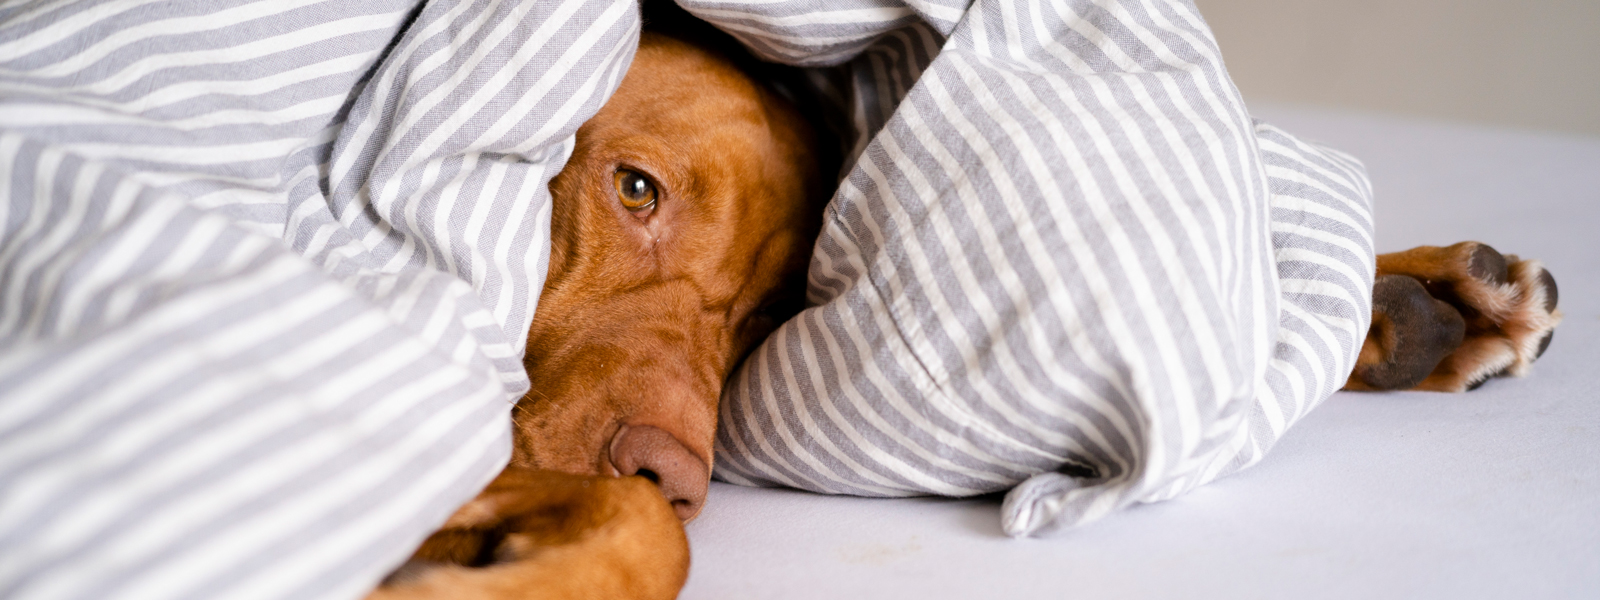 Ein Hund liegt auf dem Bett in einer Decke eingewickelt und man sieht nur den Kopf und die Vorderpfoten